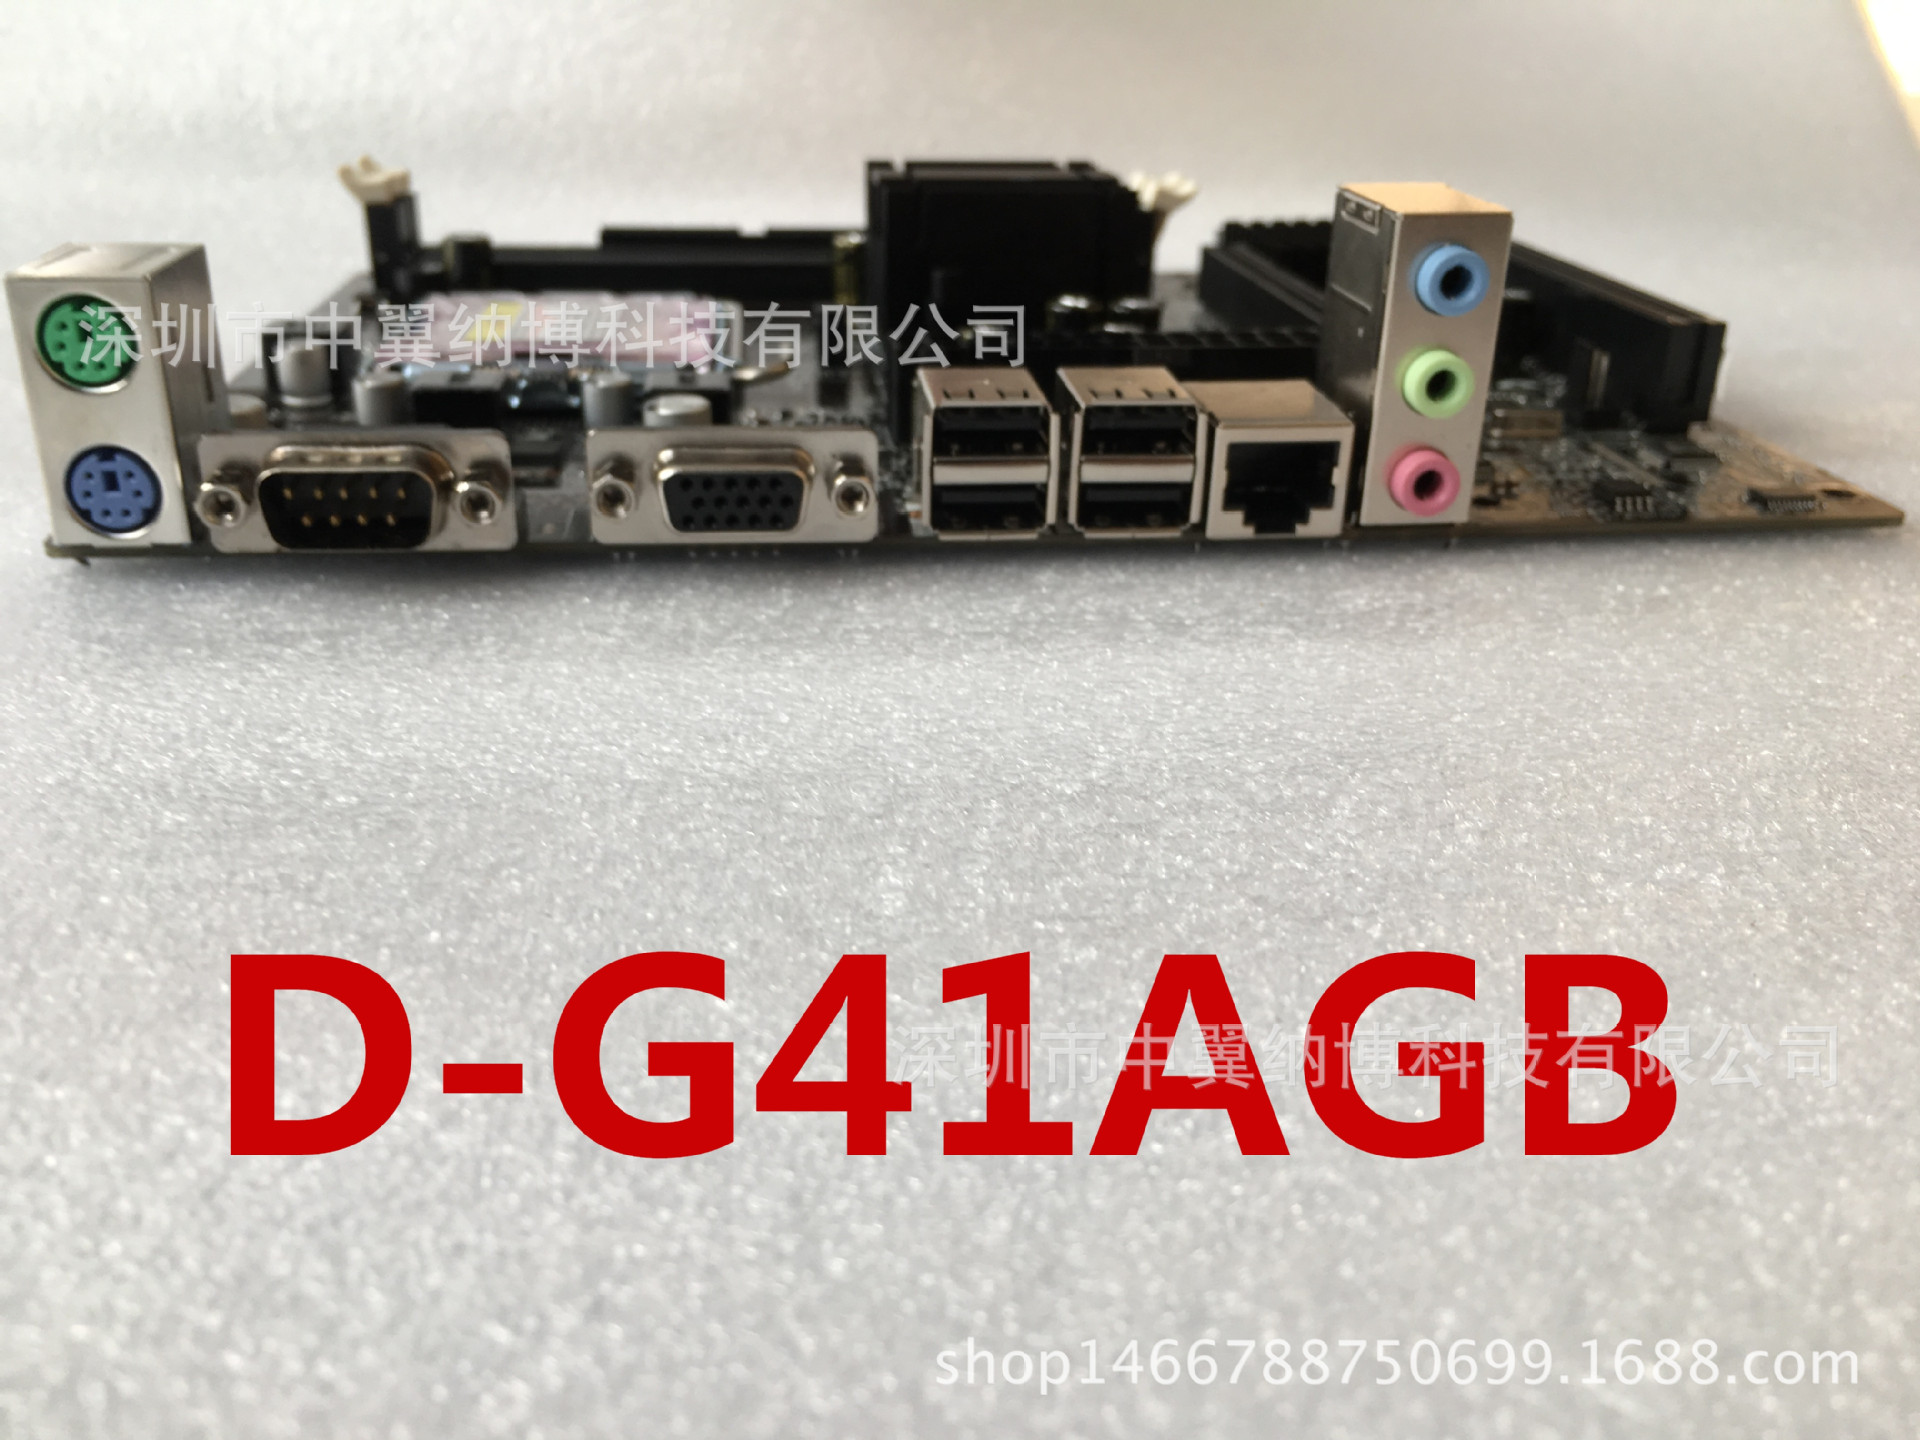 全新G41主板 台式机主板DIYDDR3支持因特尔775针/771针诚征代理